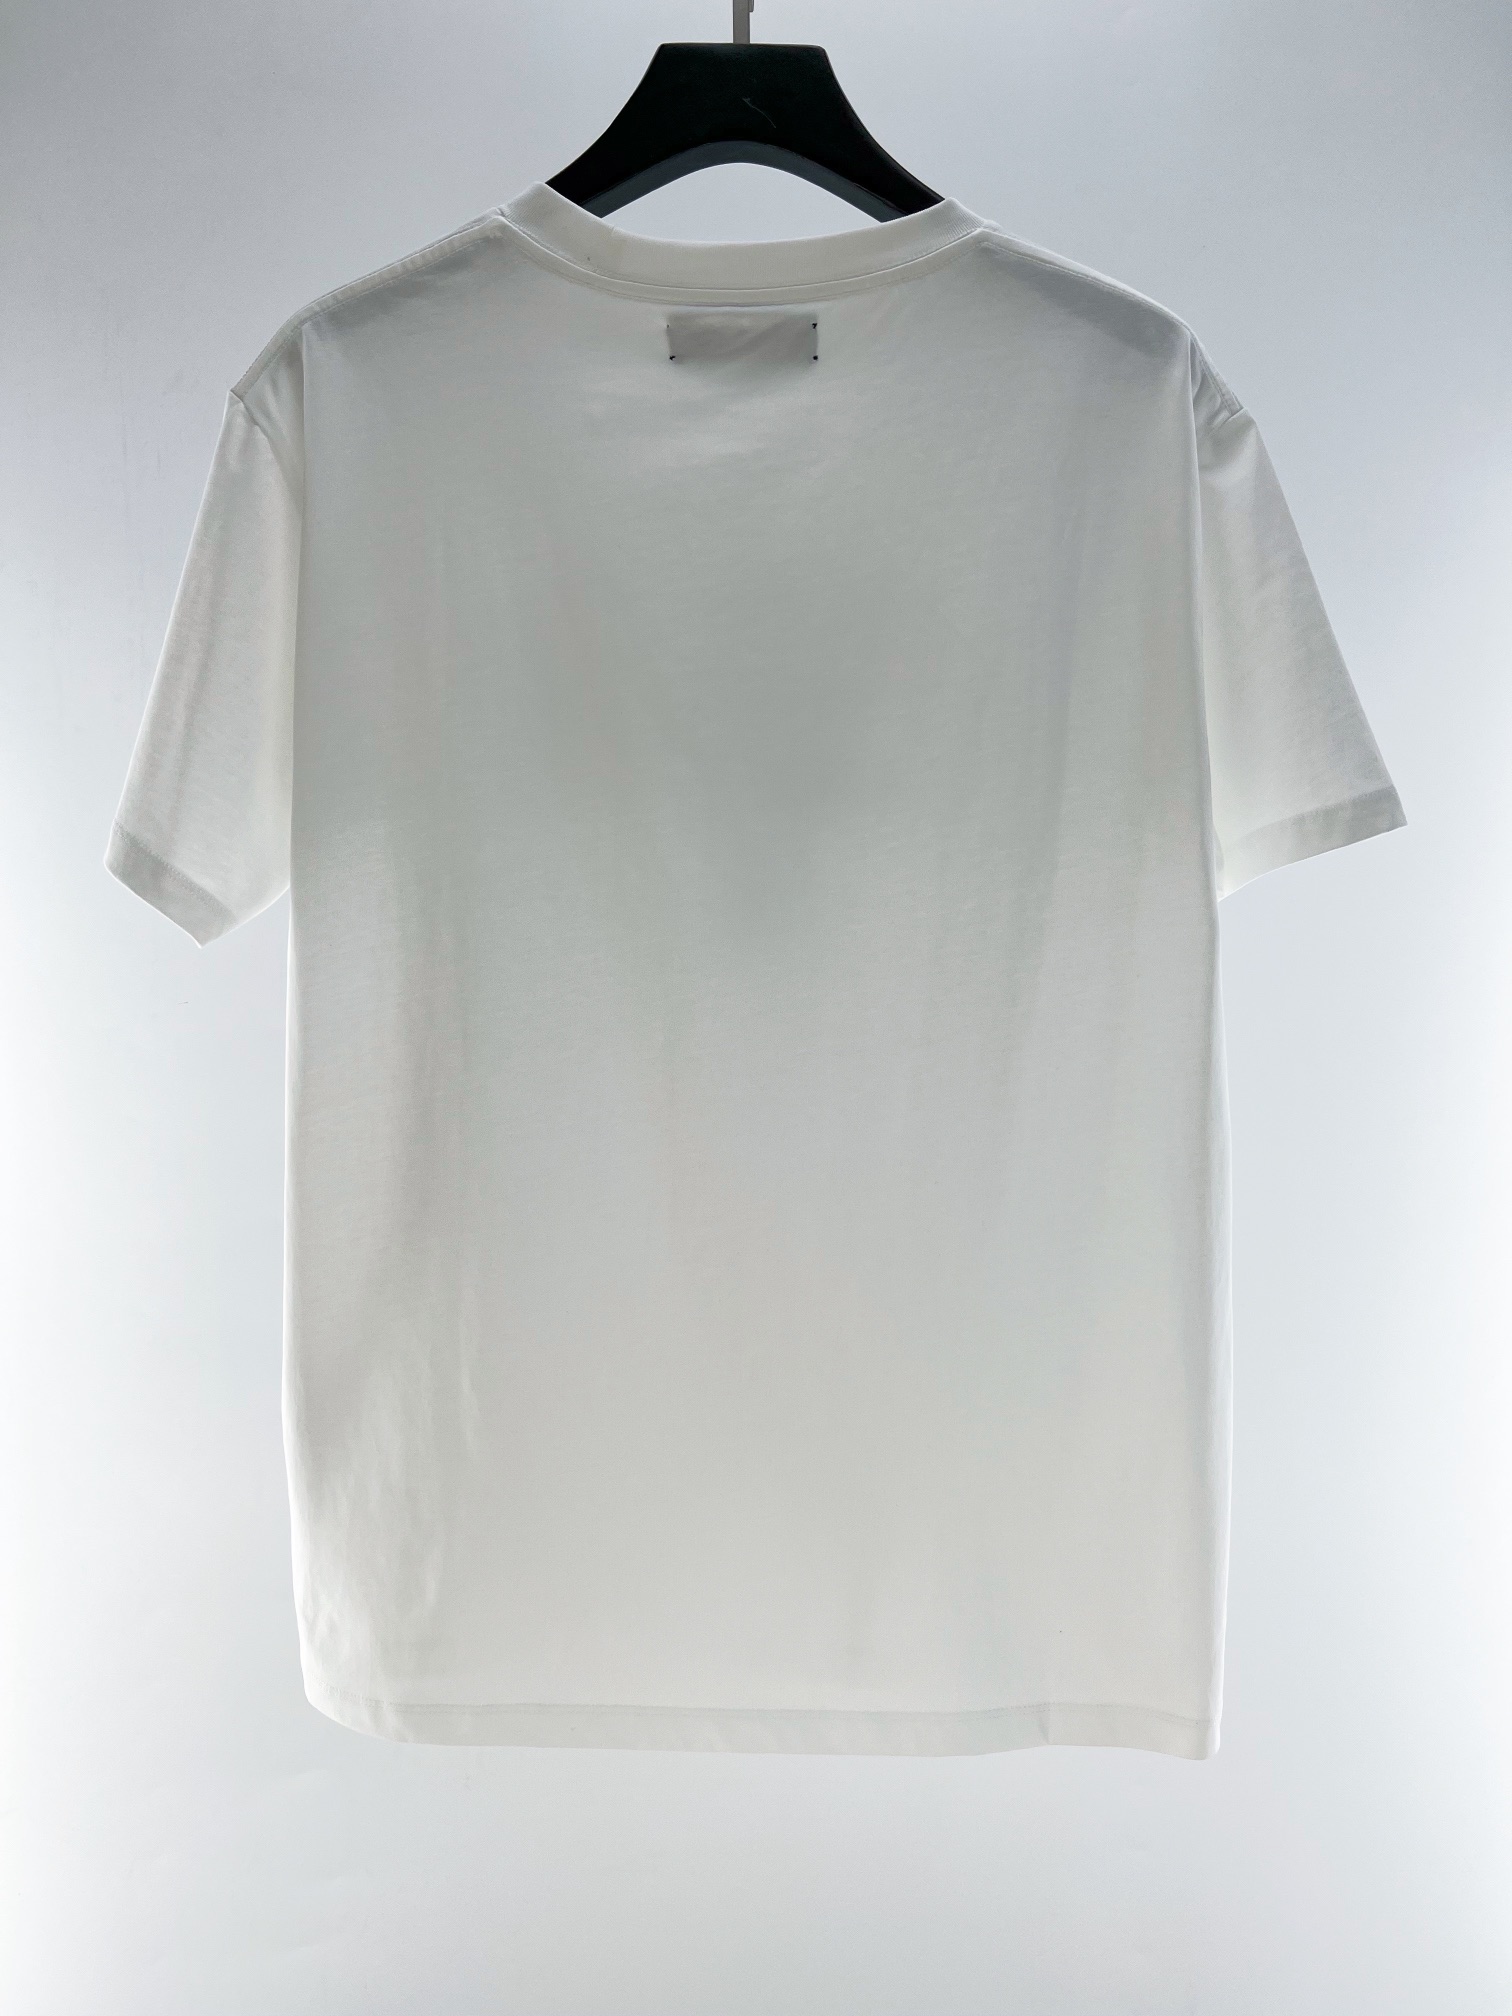 お得！限定品 アミリtシャツ激安通販 人気品 柔らかい シンプル 夏服 Tシャツ  2色可選 ホワイト_8